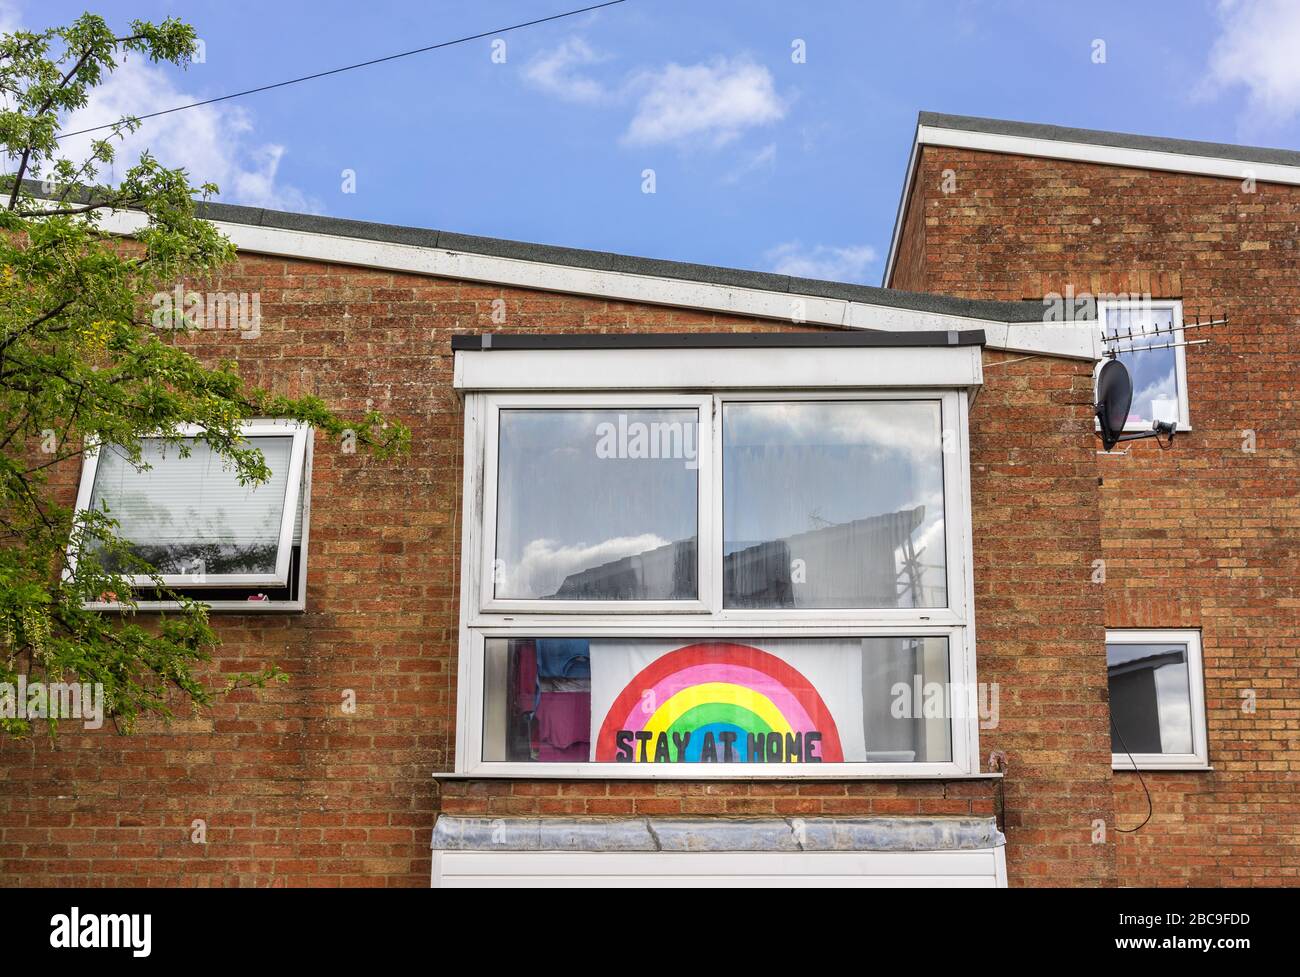 Cartello con un messaggio "Say at home" e un arcobaleno visualizzato in una finestra all'altezza della pandemia del coronavirus del 2020 a Southampton, Inghilterra, Regno Unito Foto Stock